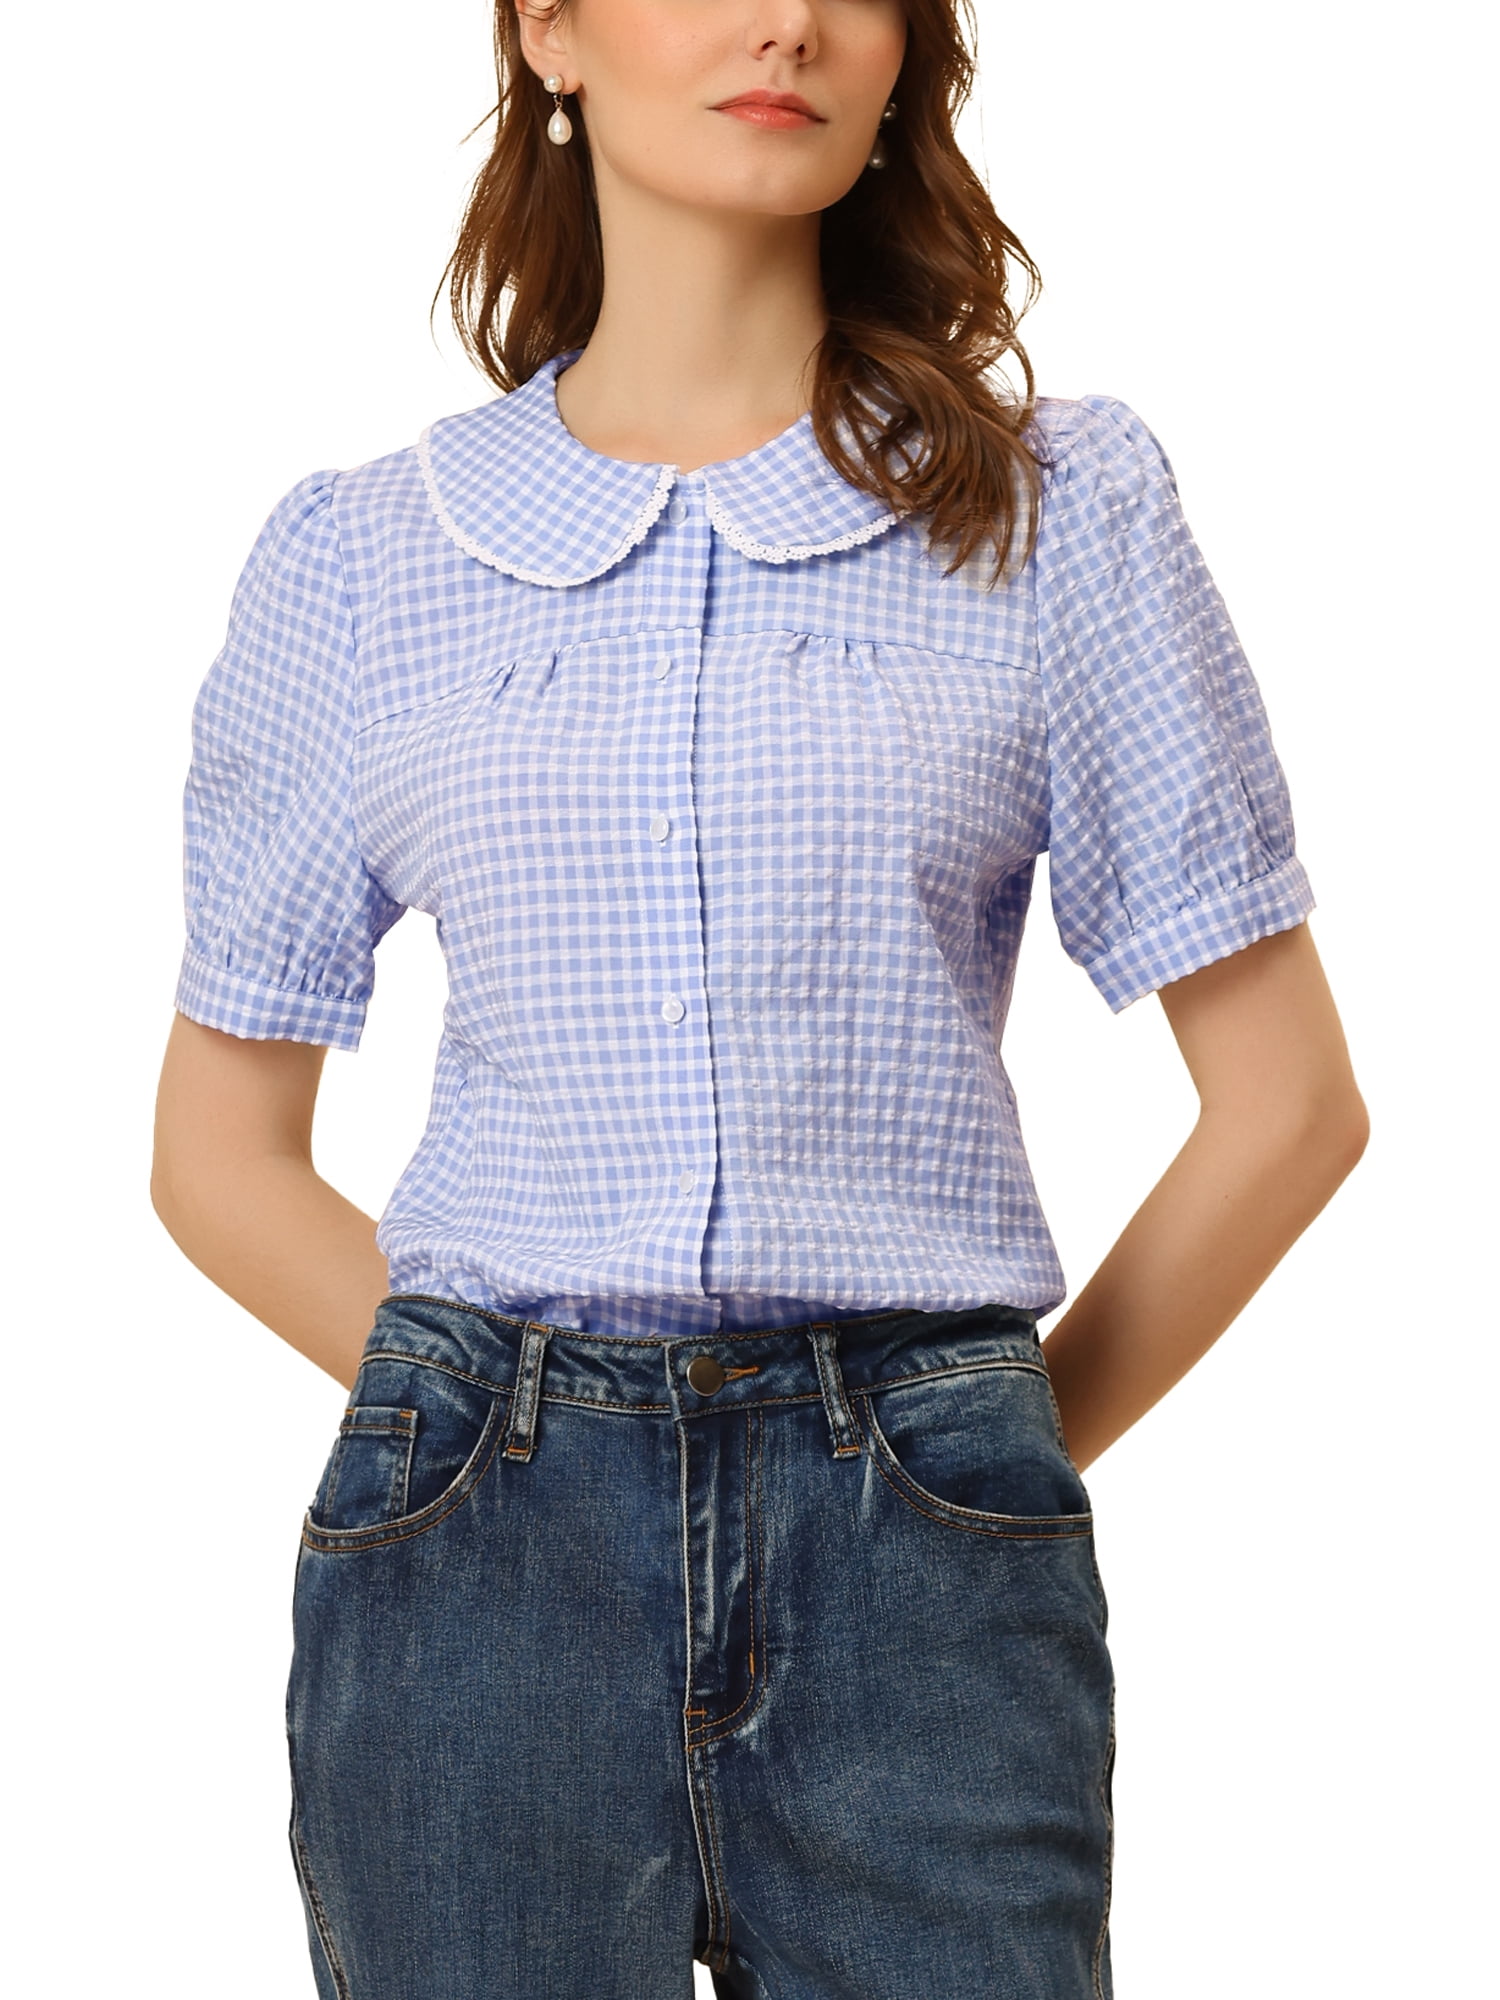 Unique Bargains Women's Peter Pan Collar Blouse Puff Contrast Plaid Shirt  Top 